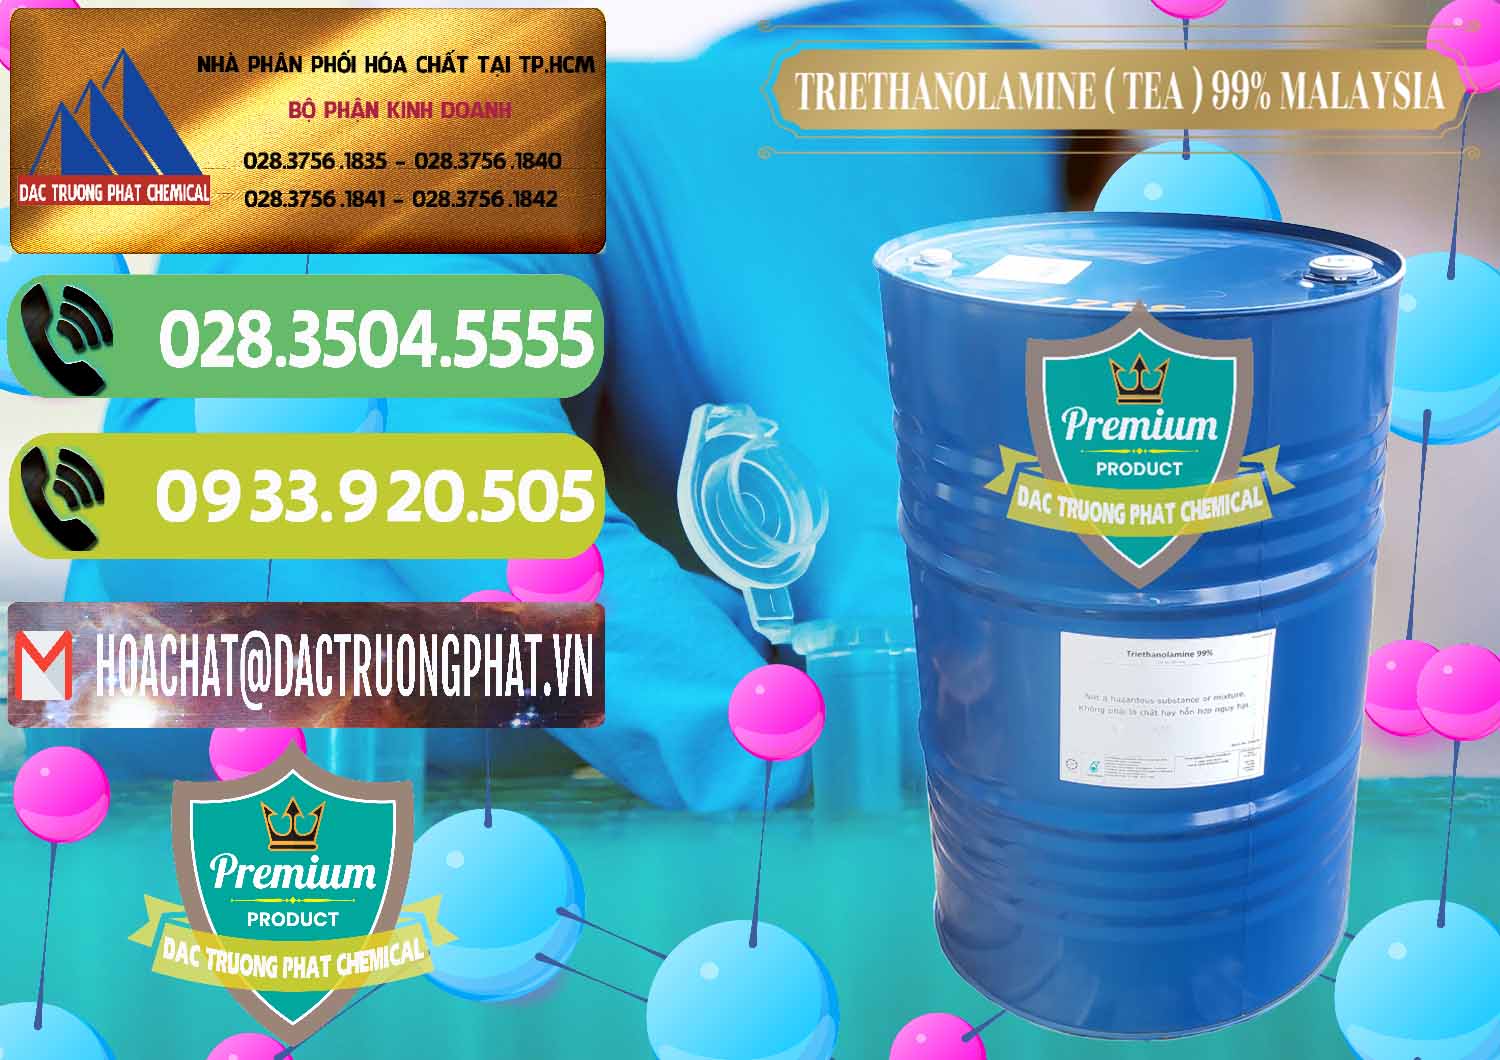 Nơi chuyên phân phối & bán TEA - Triethanolamine 99% Mã Lai Malaysia - 0323 - Nhập khẩu & cung cấp hóa chất tại TP.HCM - hoachatmientay.vn